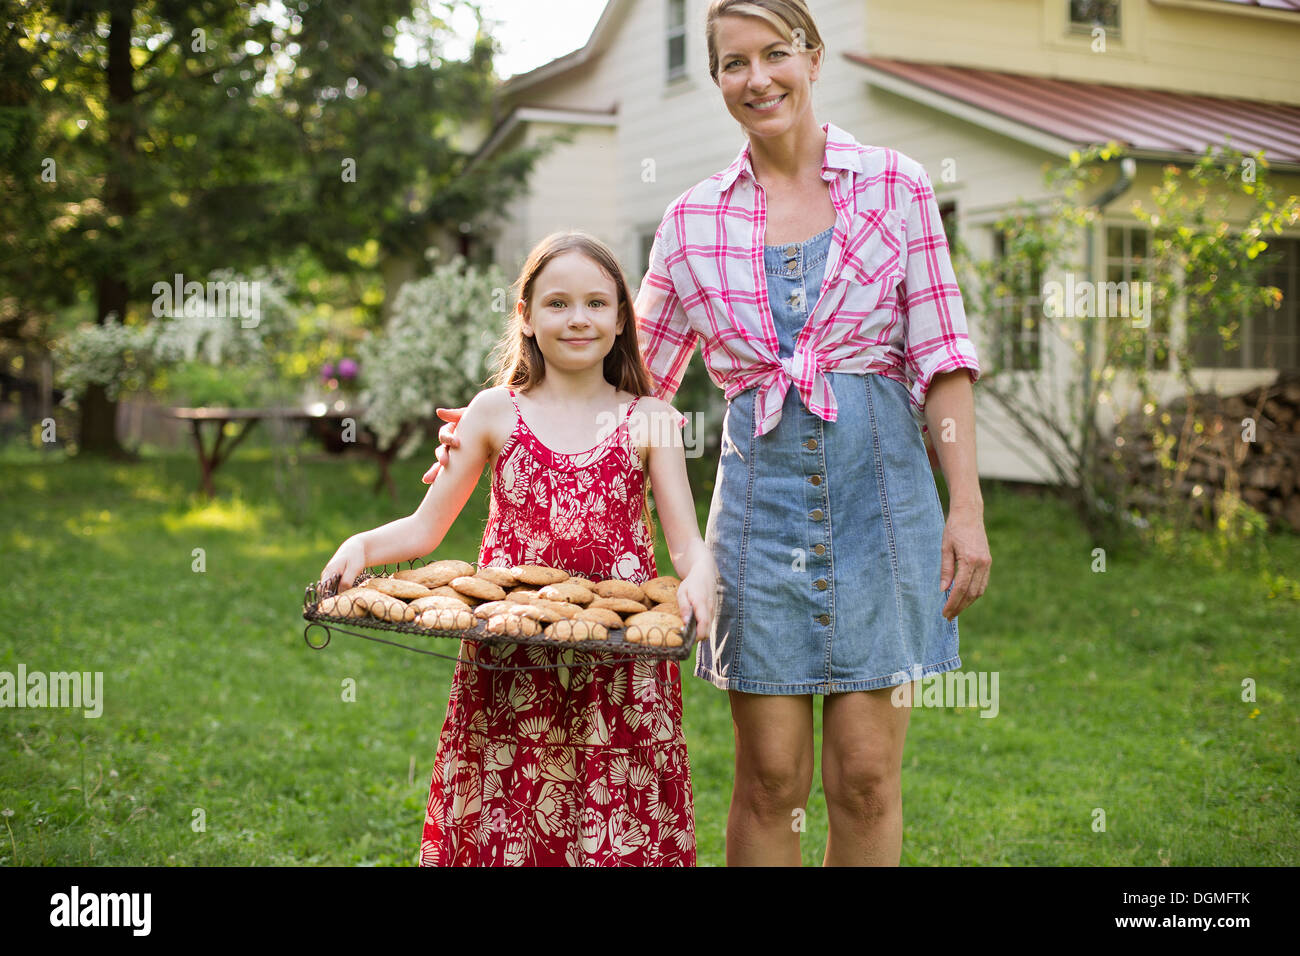 La cottura biscotti fatti in casa. Una giovane ragazza con un vassoio di biscotti appena sfornati e una donna adulta accanto a lei. Foto Stock